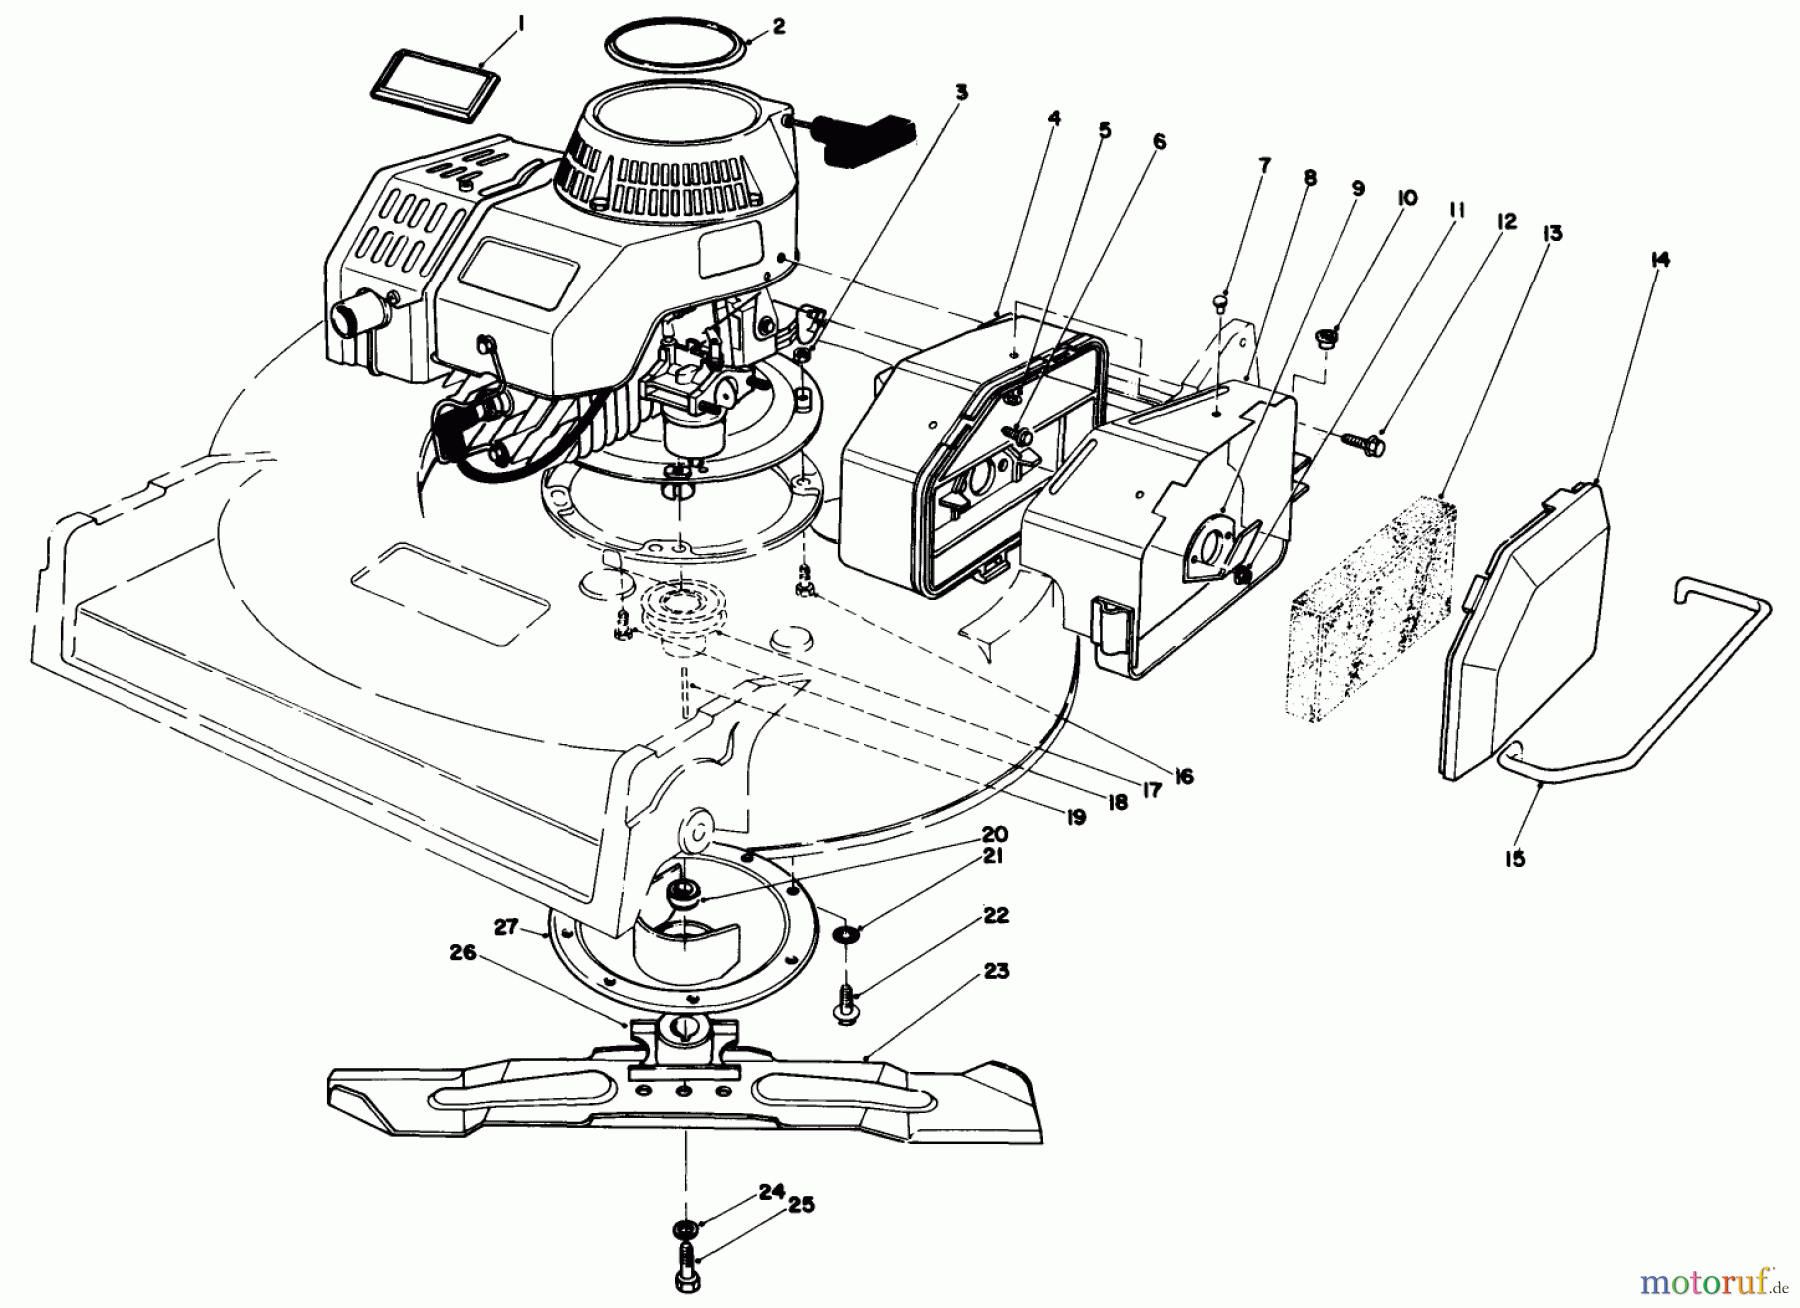  Toro Neu Mowers, Walk-Behind Seite 2 22030 - Toro Lawnmower, 1989 (9000001-9999999) ENGINE ASSEMBLY (MODEL 22035)